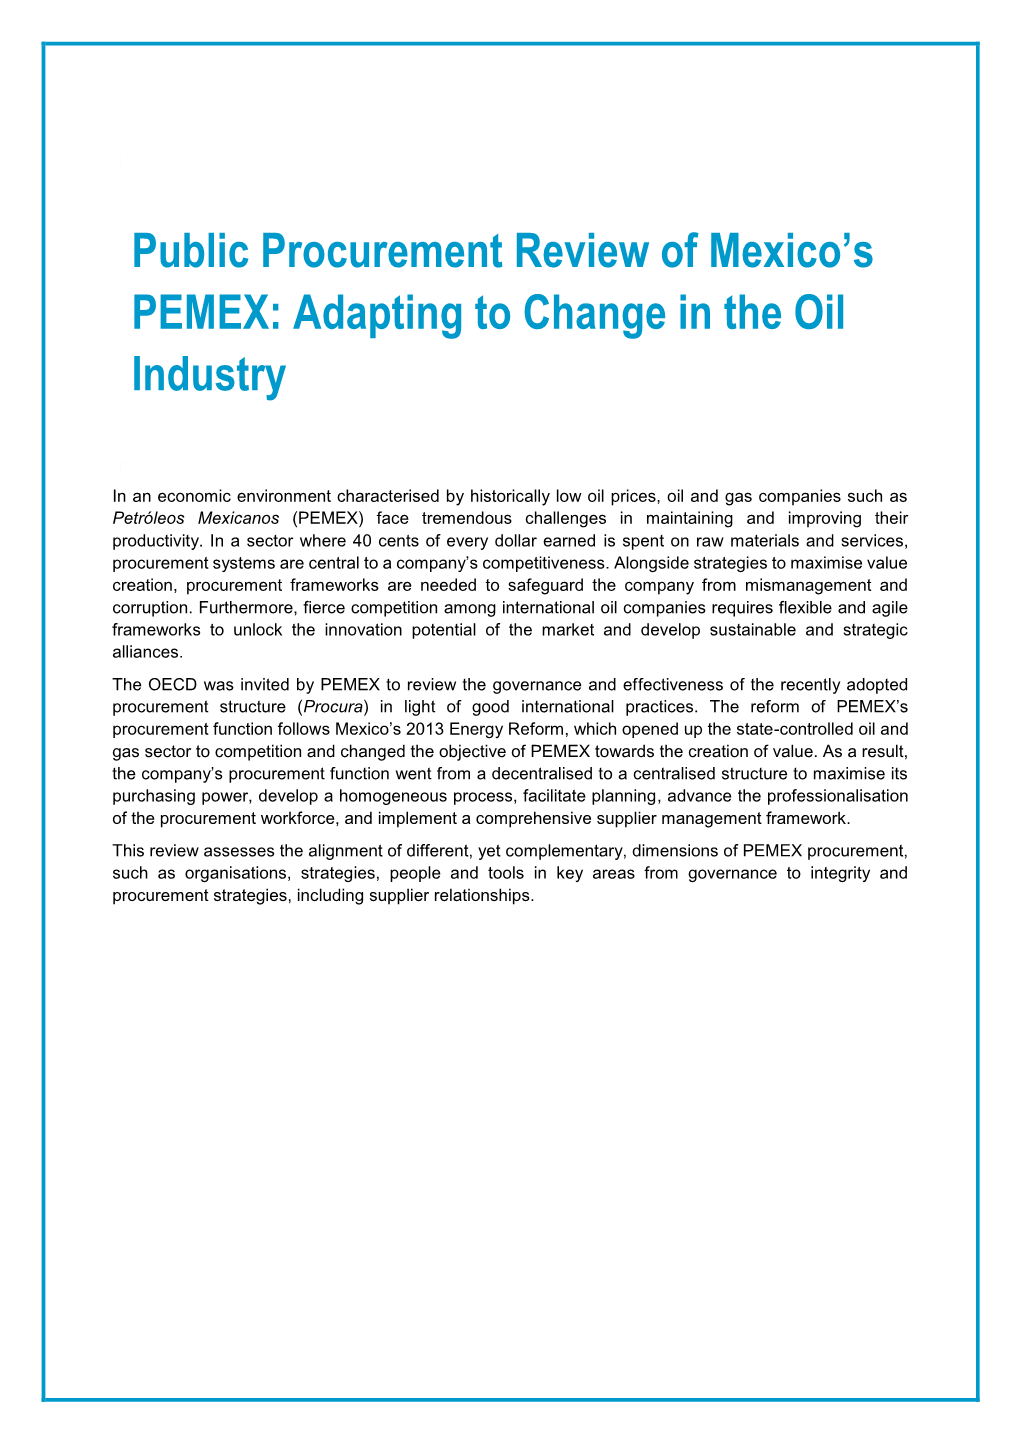 Public Procurement Review of Mexico's PEMEX